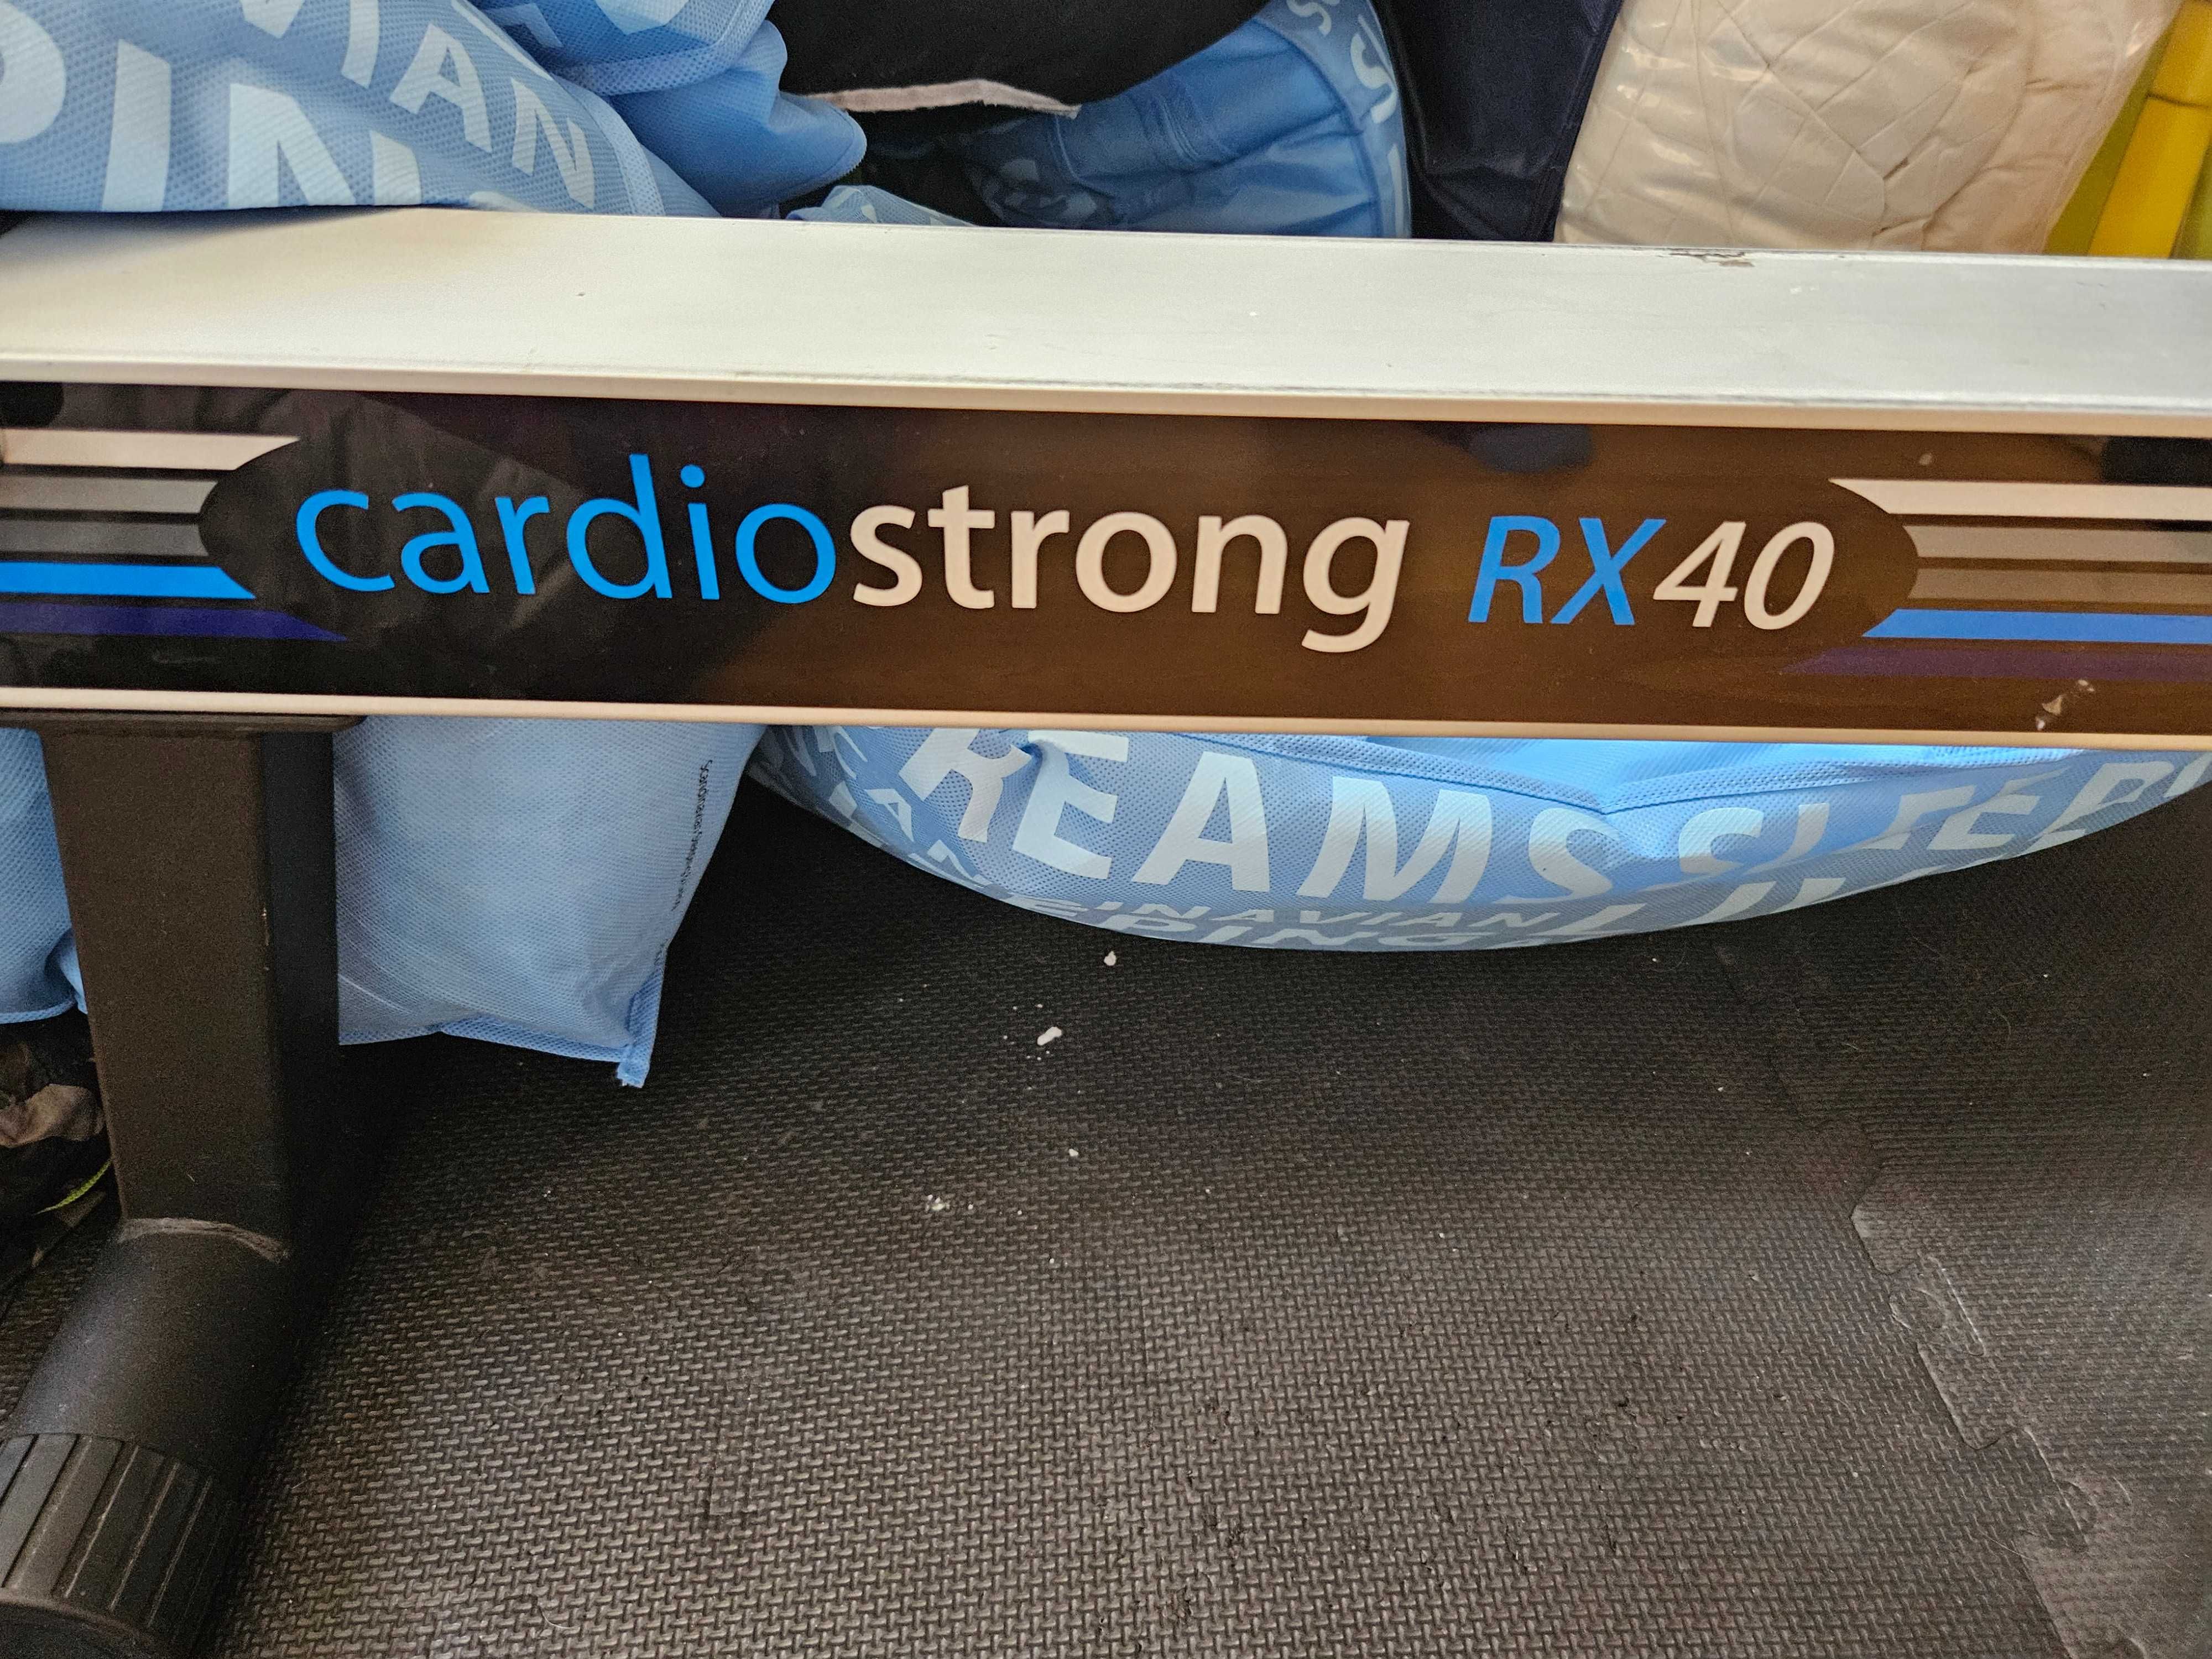 Wioślarz Cardiostrong RX40